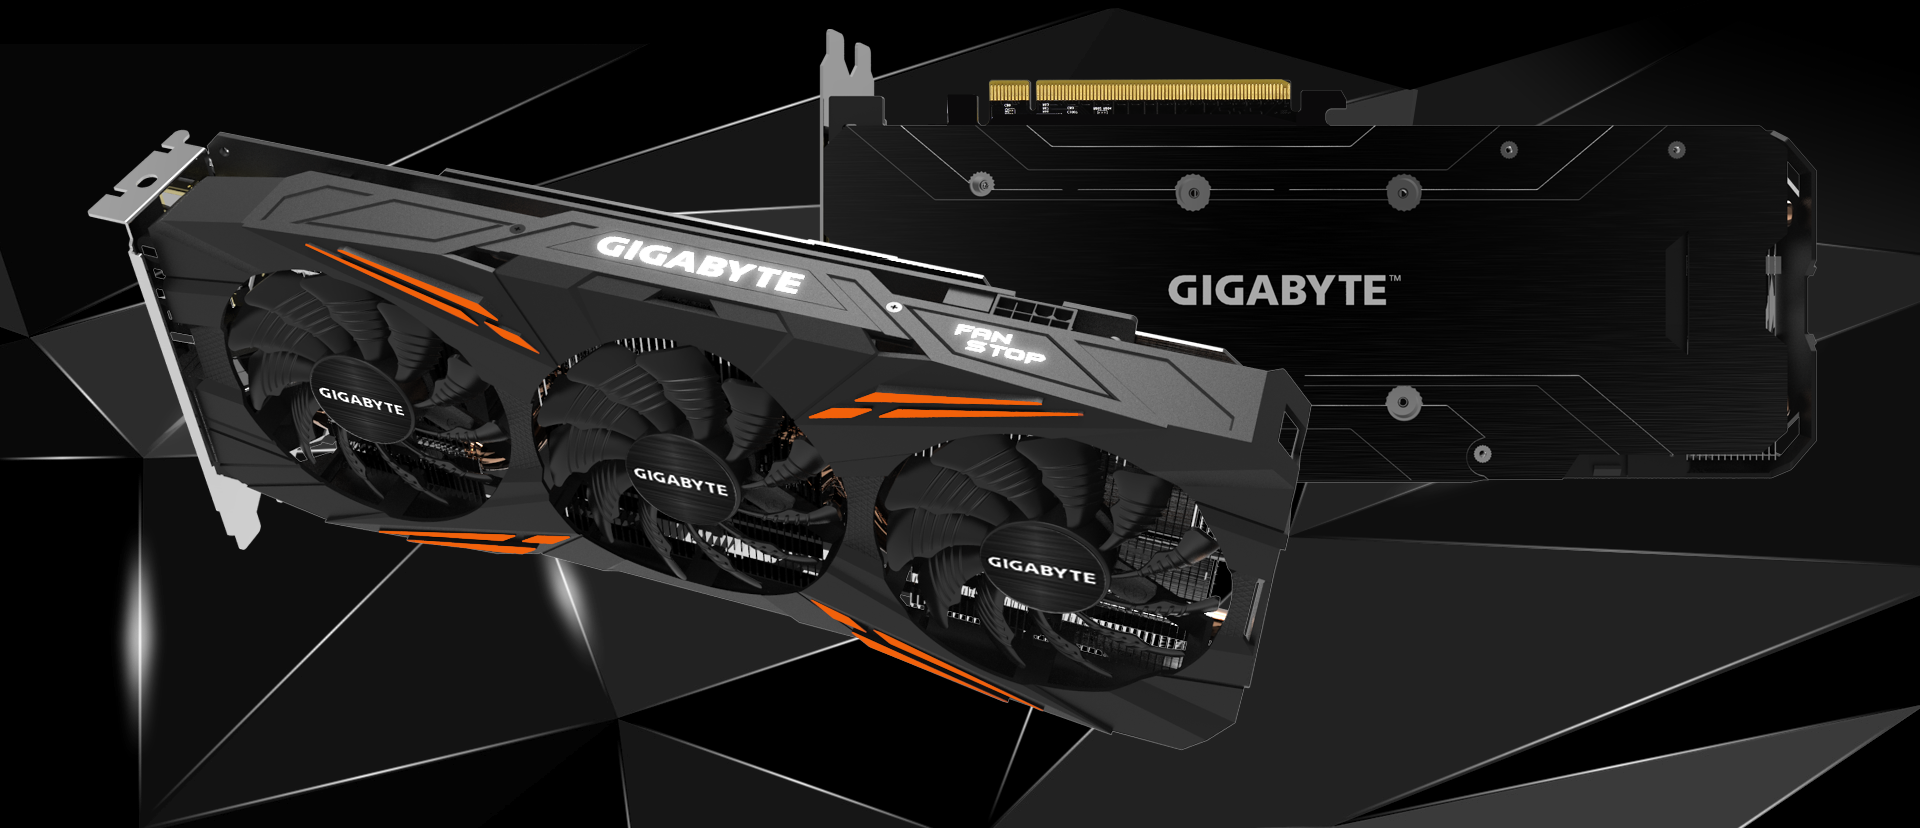 GeForce® GTX 1070 Ti Gaming 8G 主な特徴 